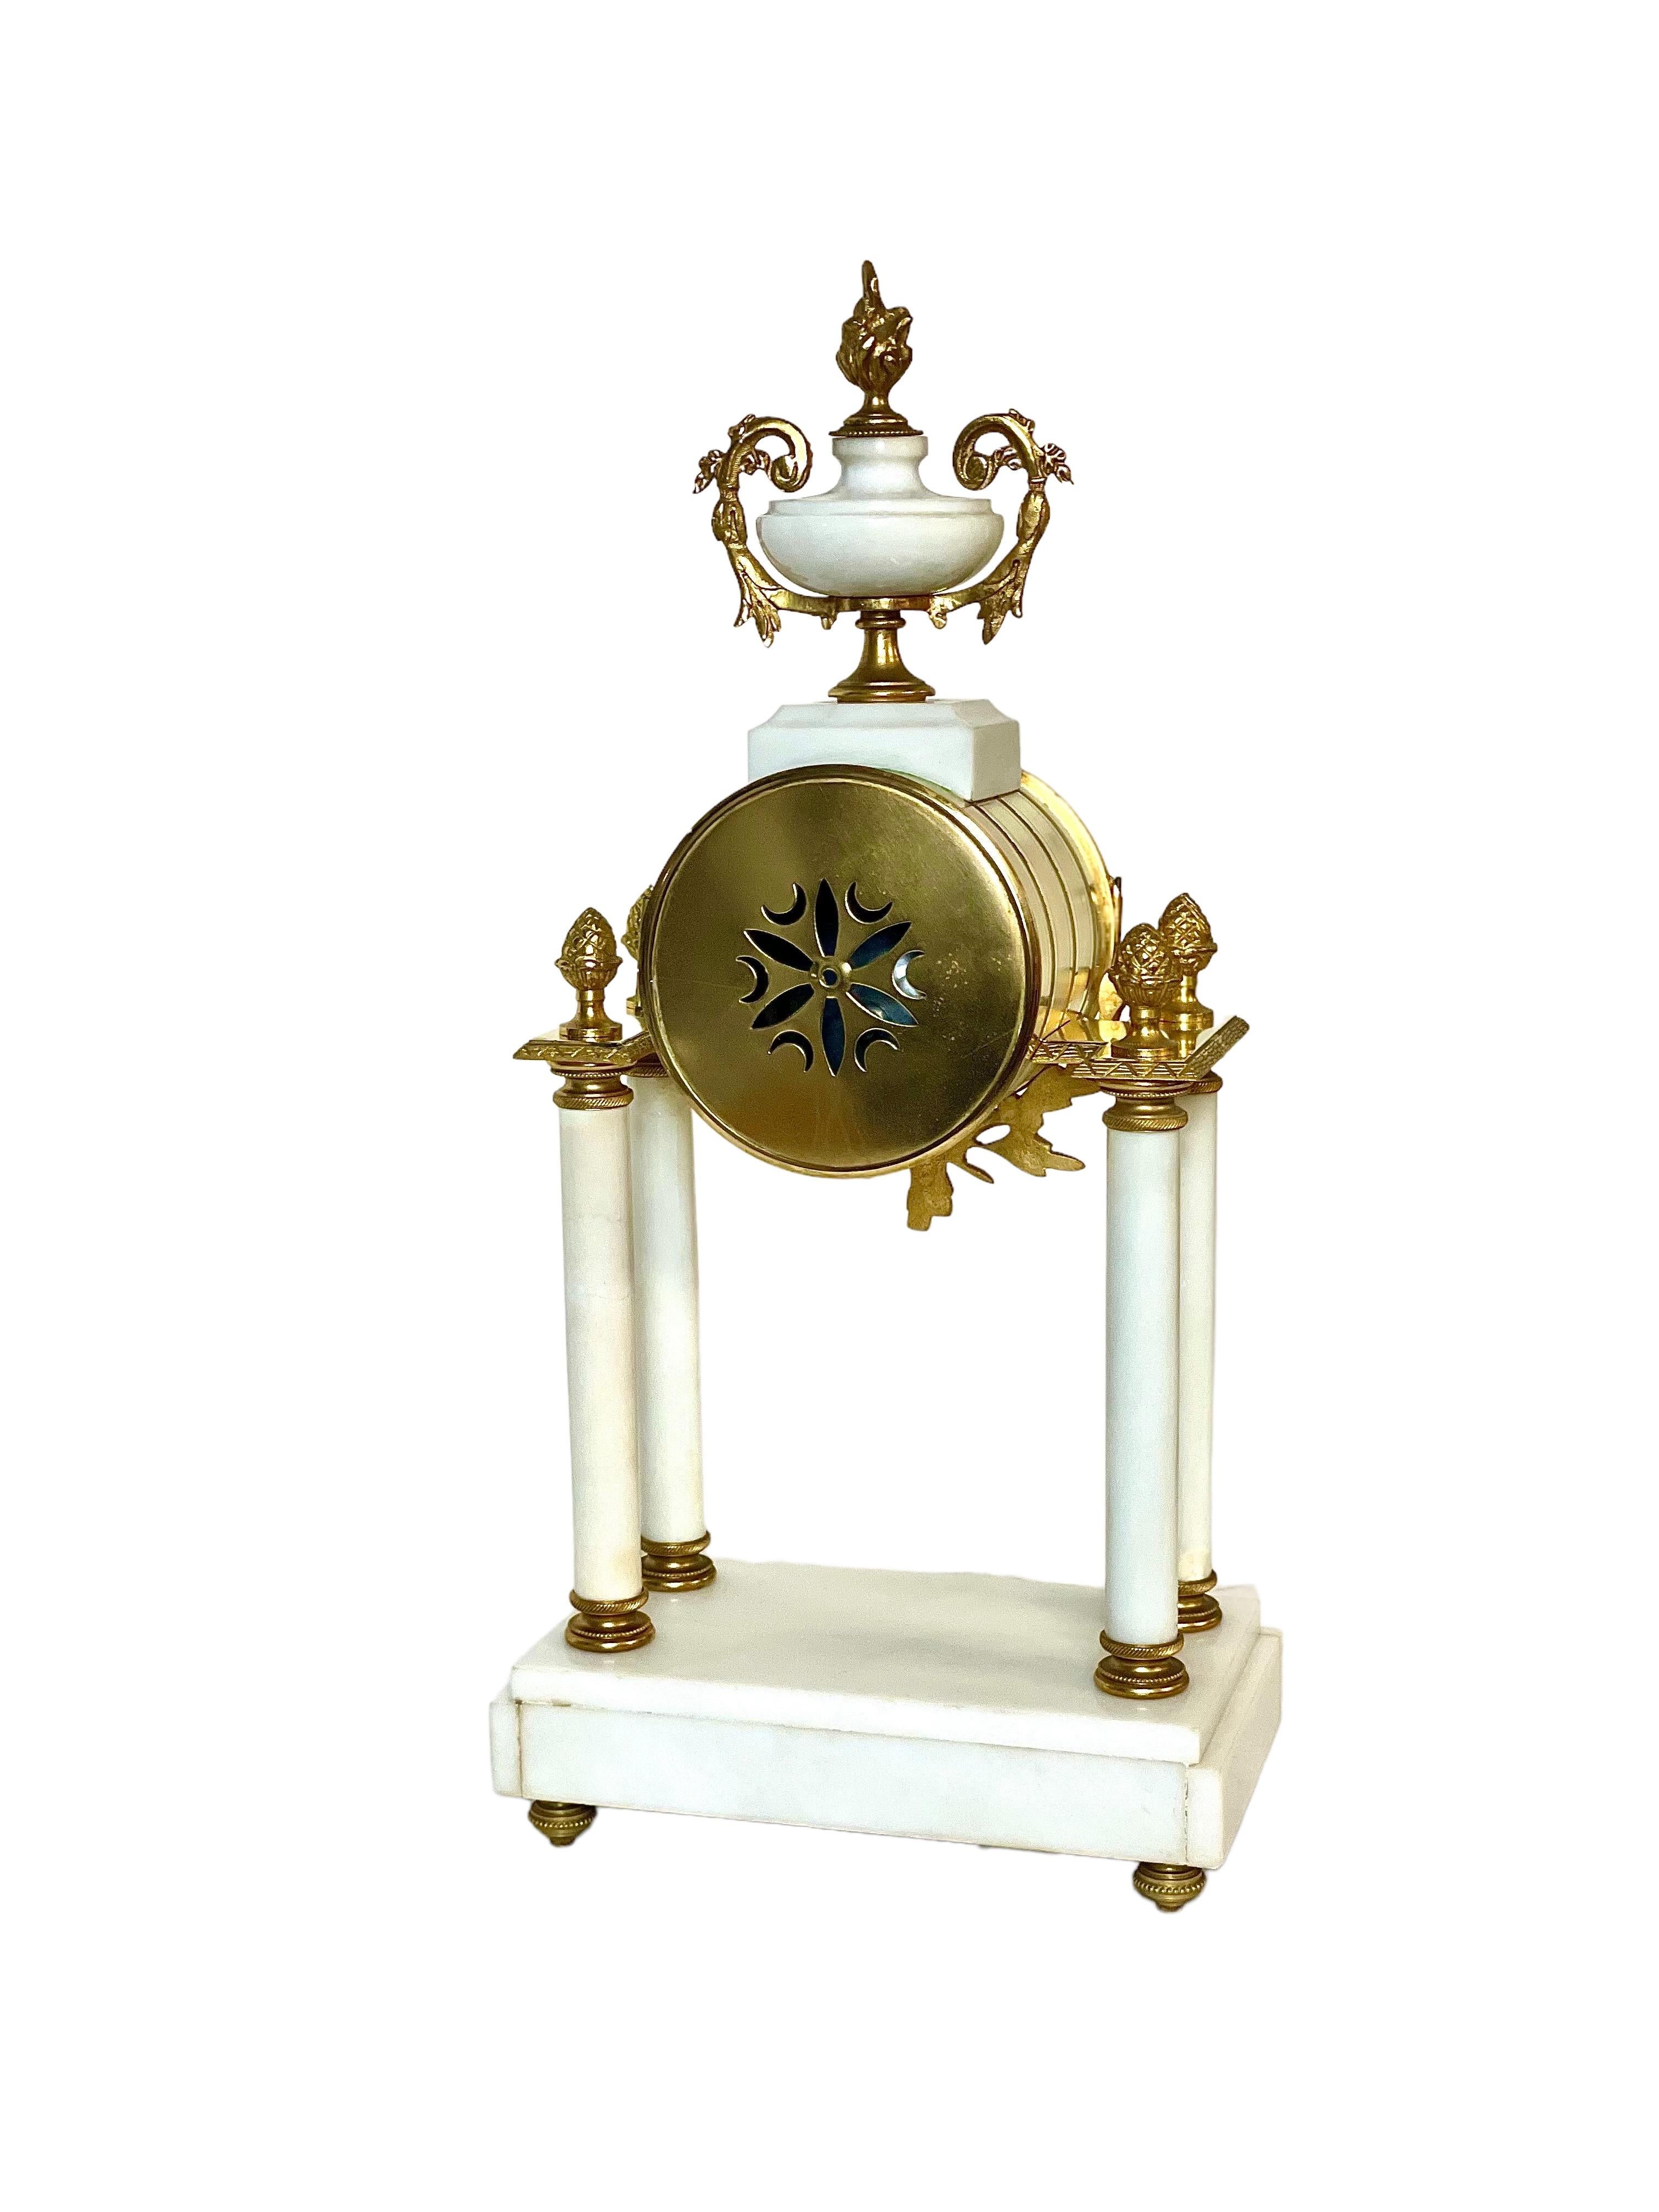 Une belle et originale horloge de portique française ancienne, fabriquée en marbre blanc monté avec du bronze doré. Le cadran de l'horloge est délicatement peint avec des guirlandes florales entre les chiffres sur de l'émail de porcelaine, et est